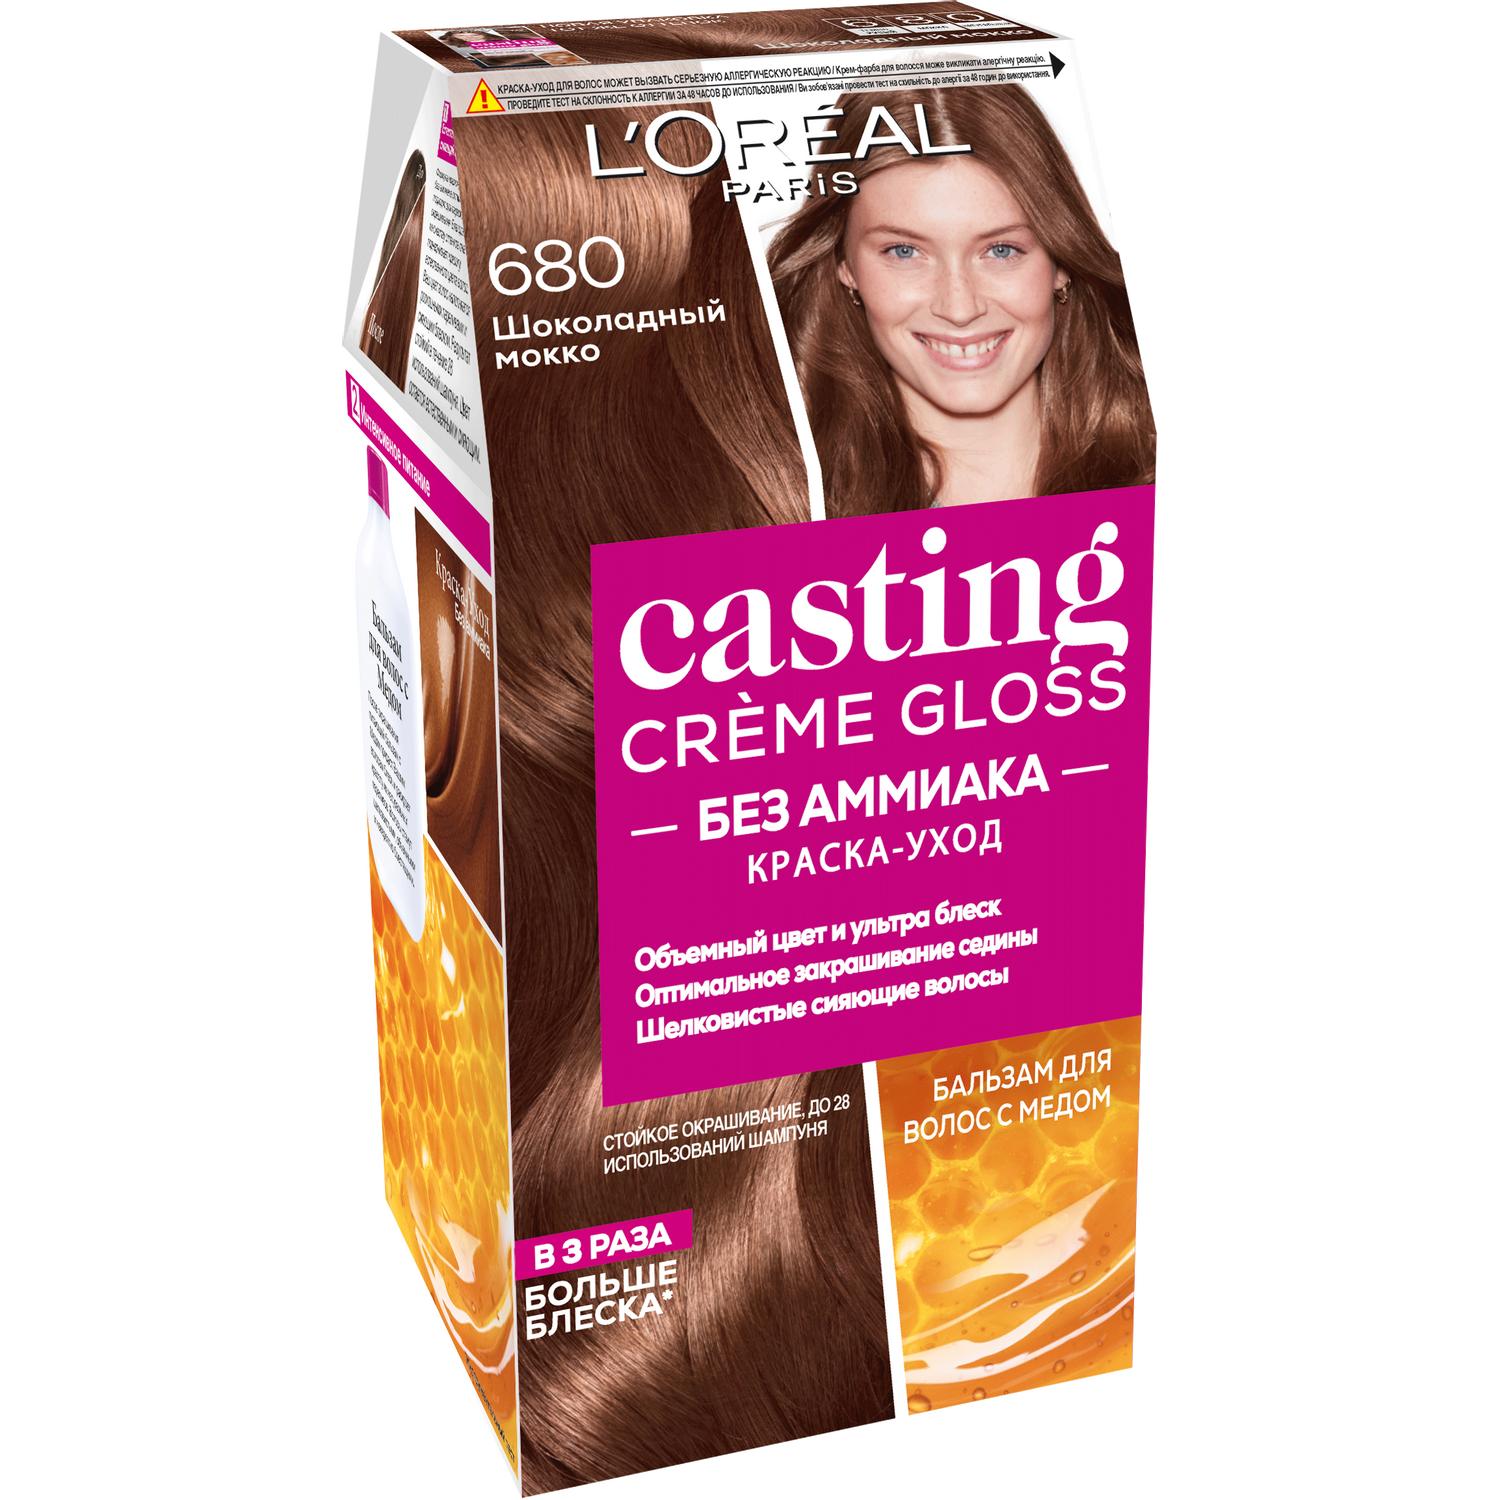 Краска для волос L'Oreal Paris Casting Creme Gloss 680 Шоколадный мокко